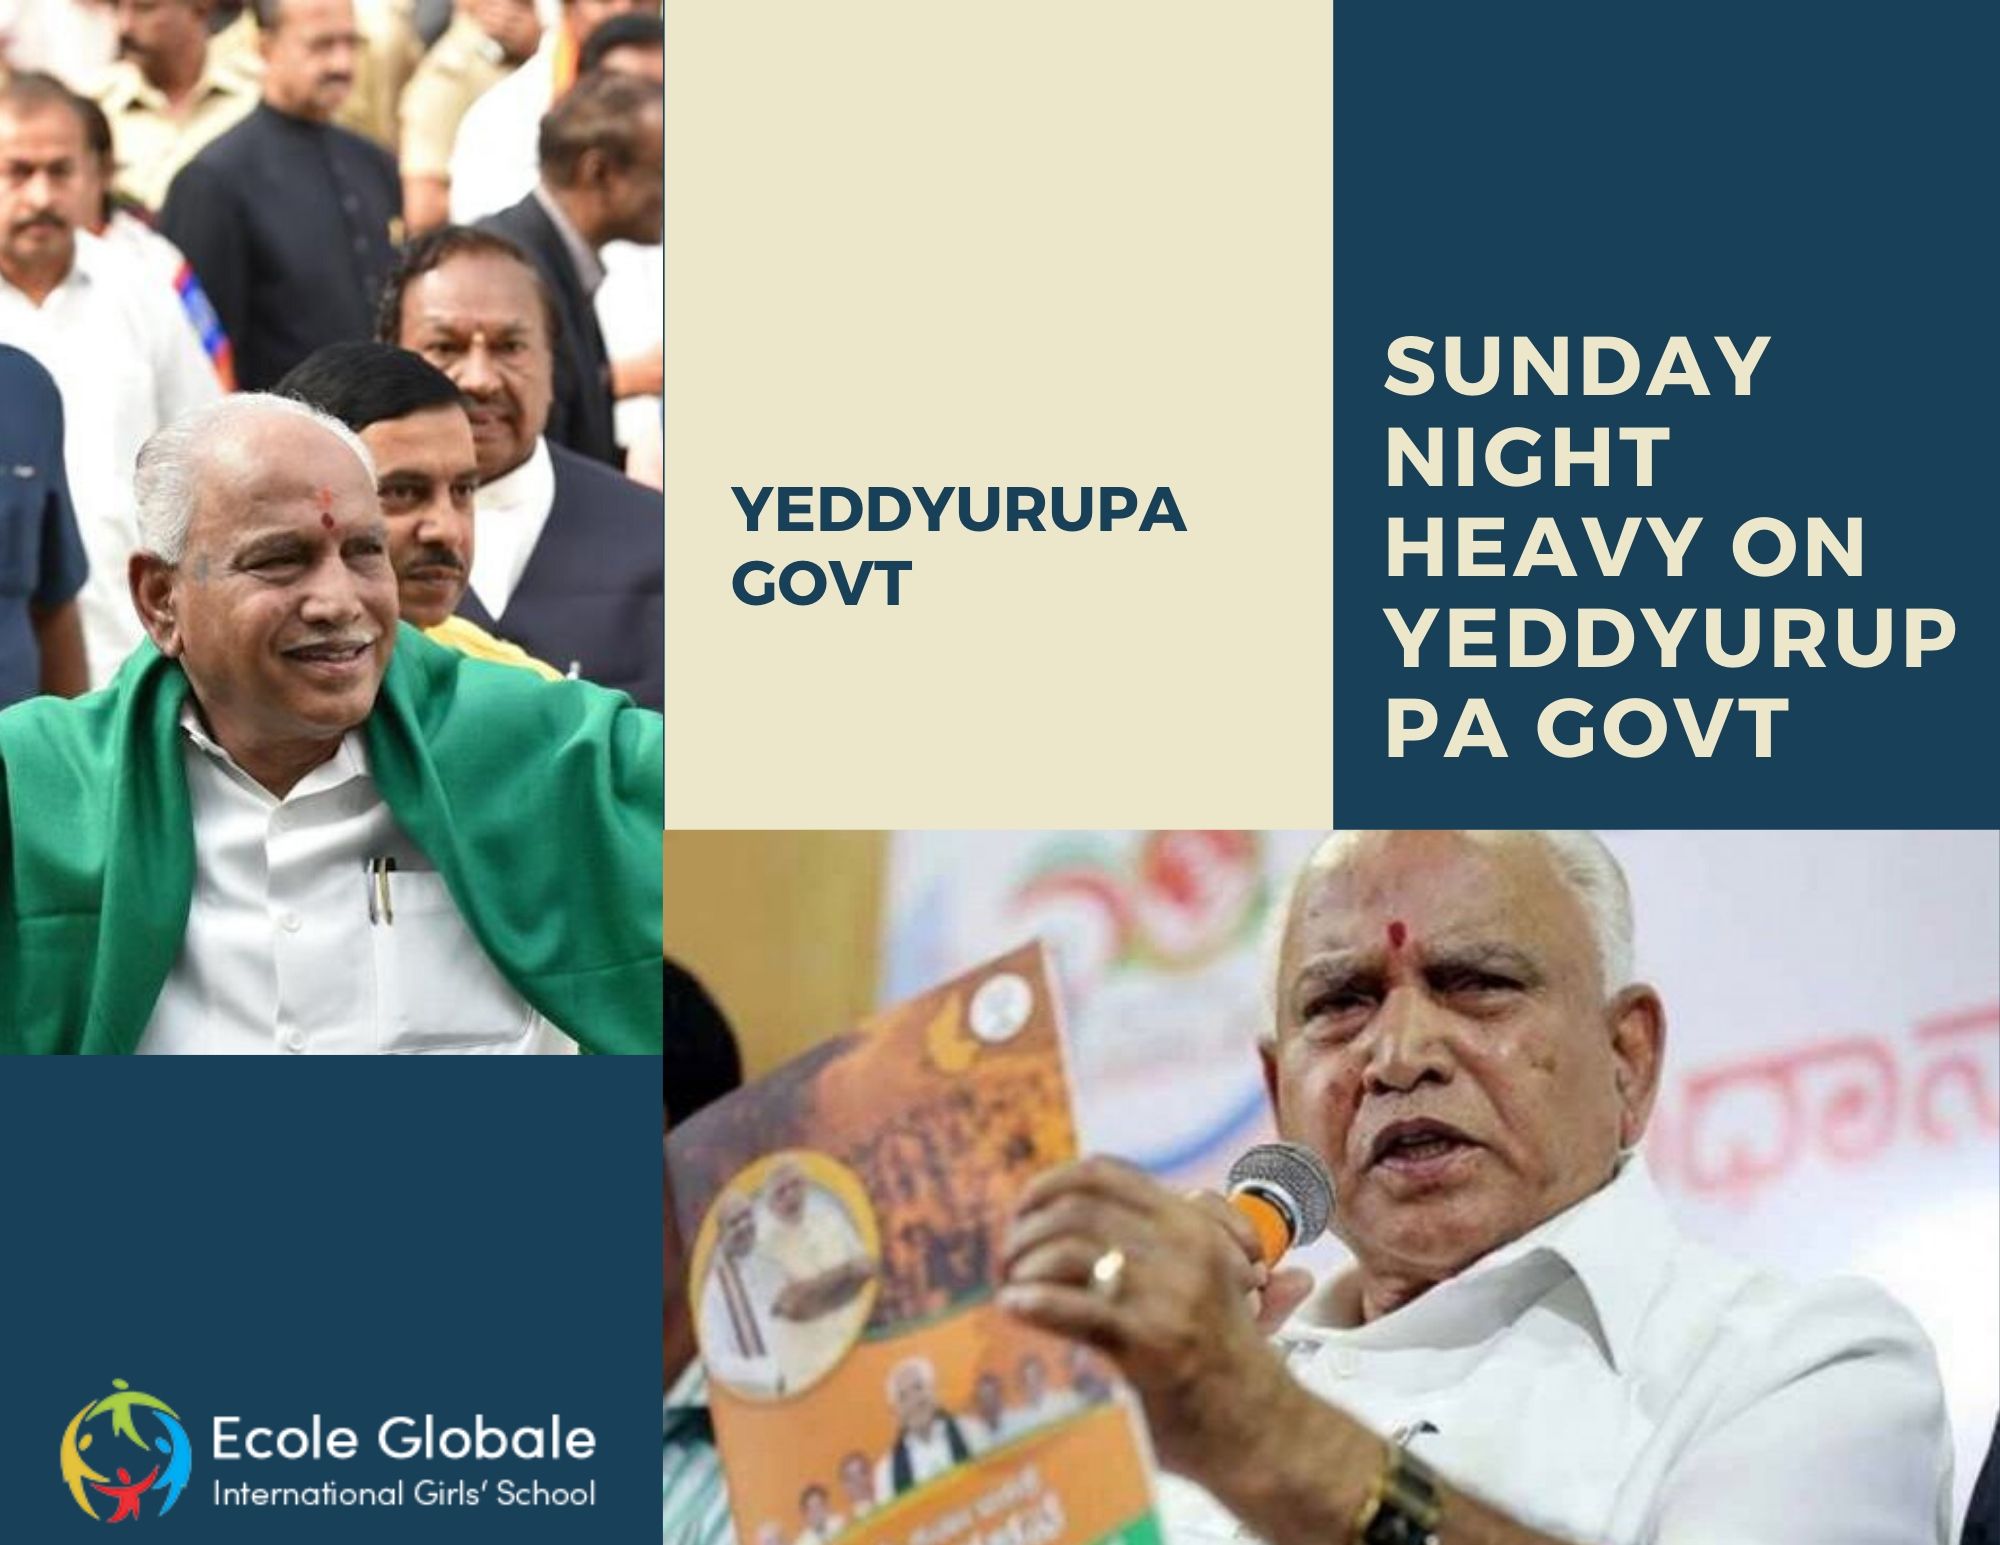 Sunday Night Heavy on Yeddyuruppa Govt